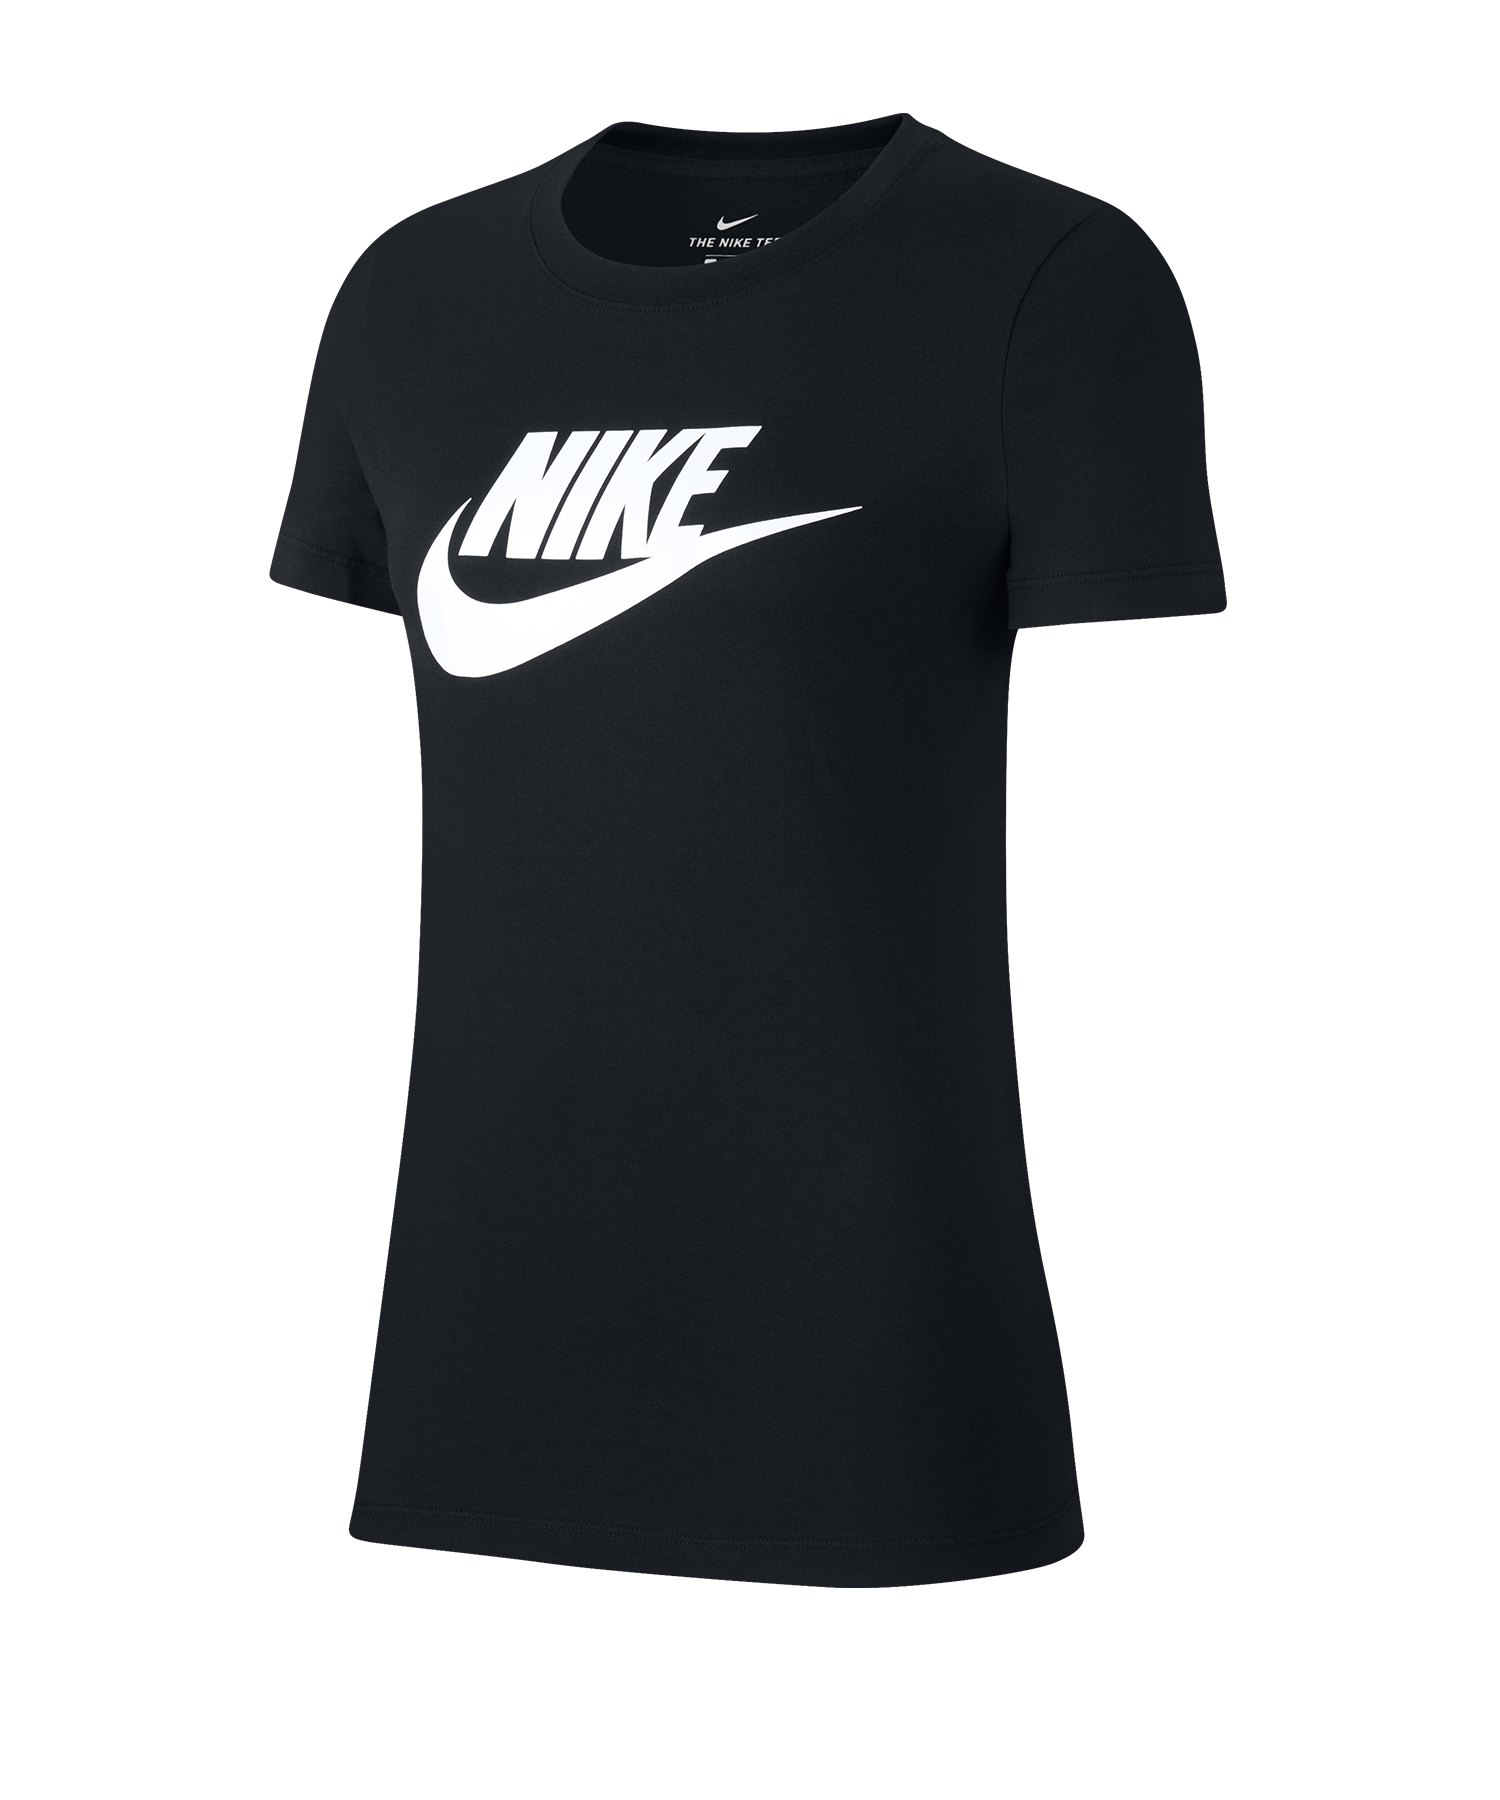 Nike Essential Tee T-Shirt Damen Schwarz F010 - schwarz